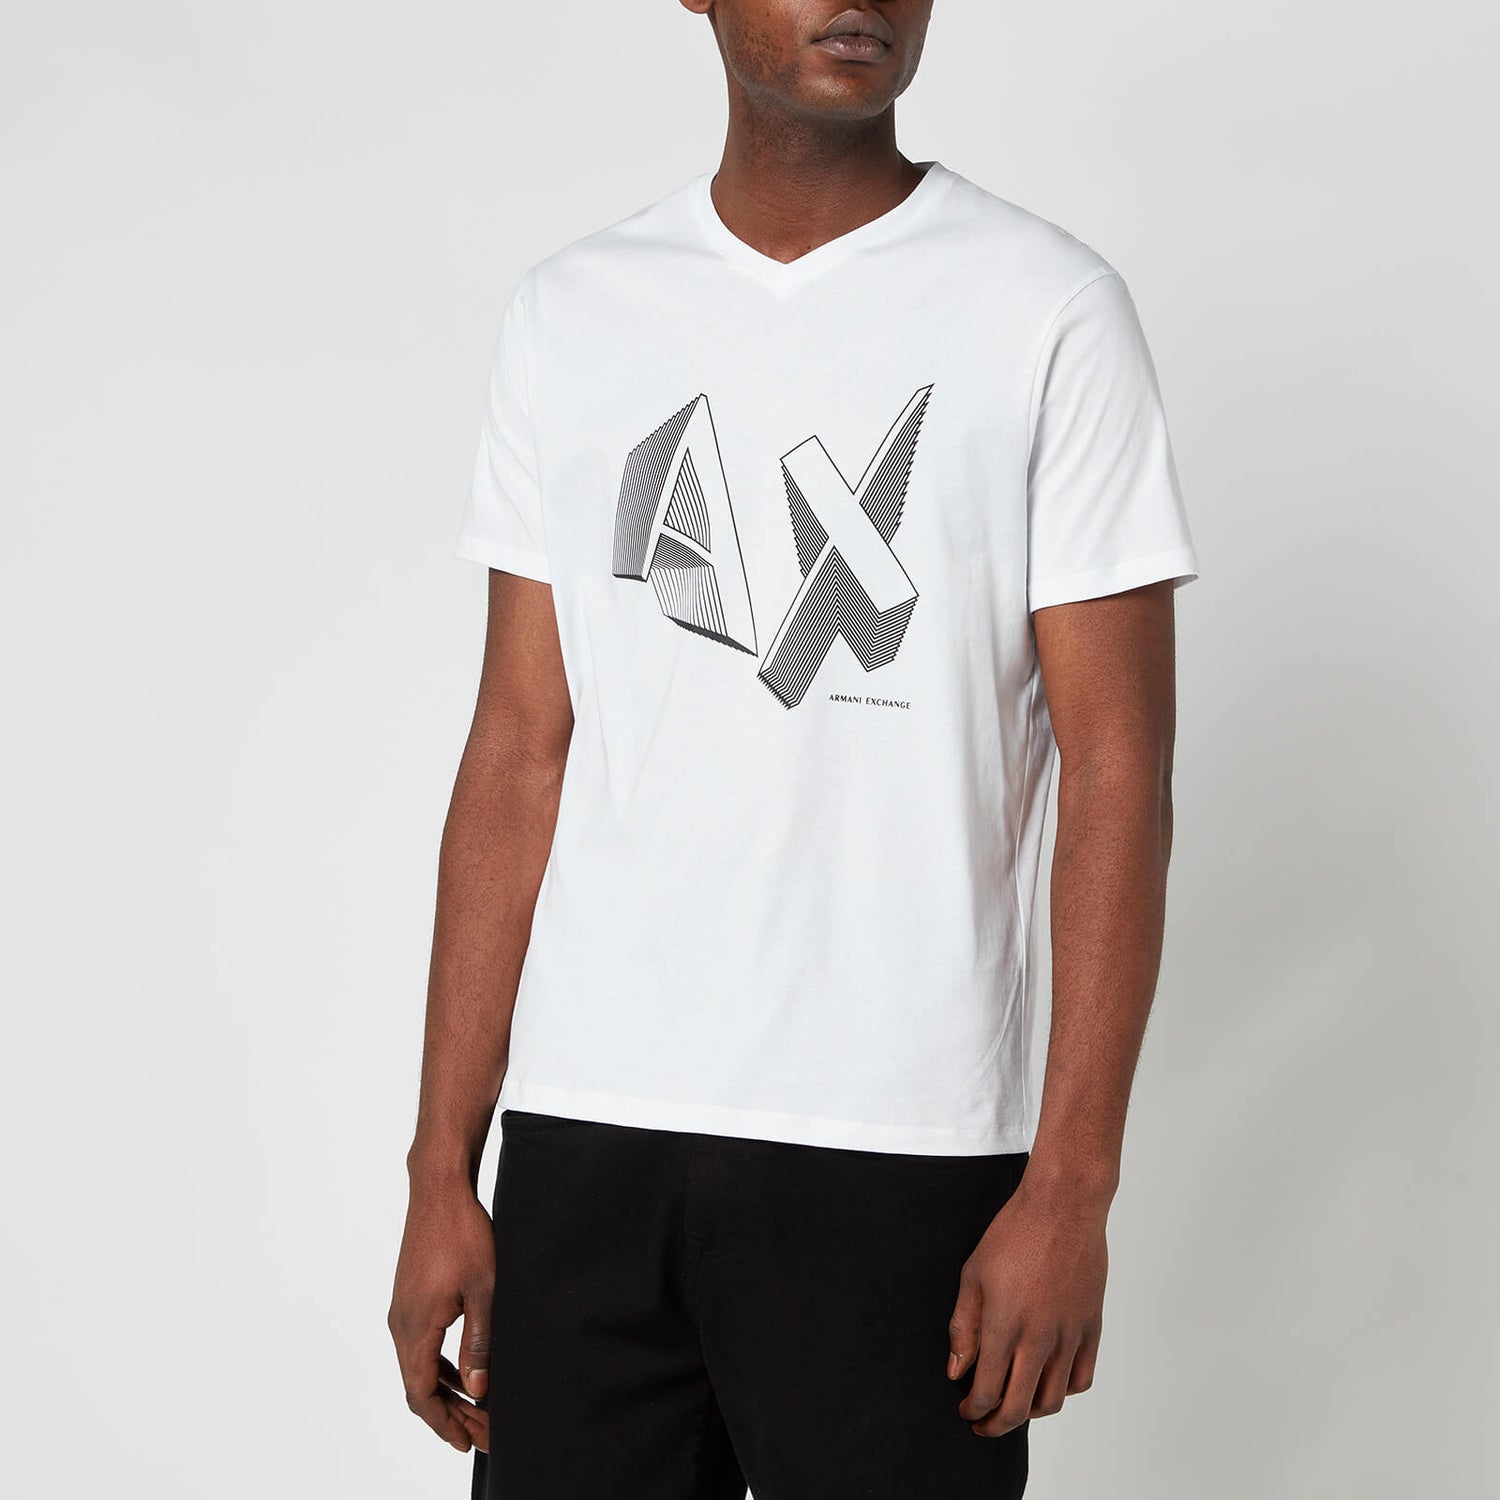 Armani Exchange Men's AX Logo T-Shirt - White